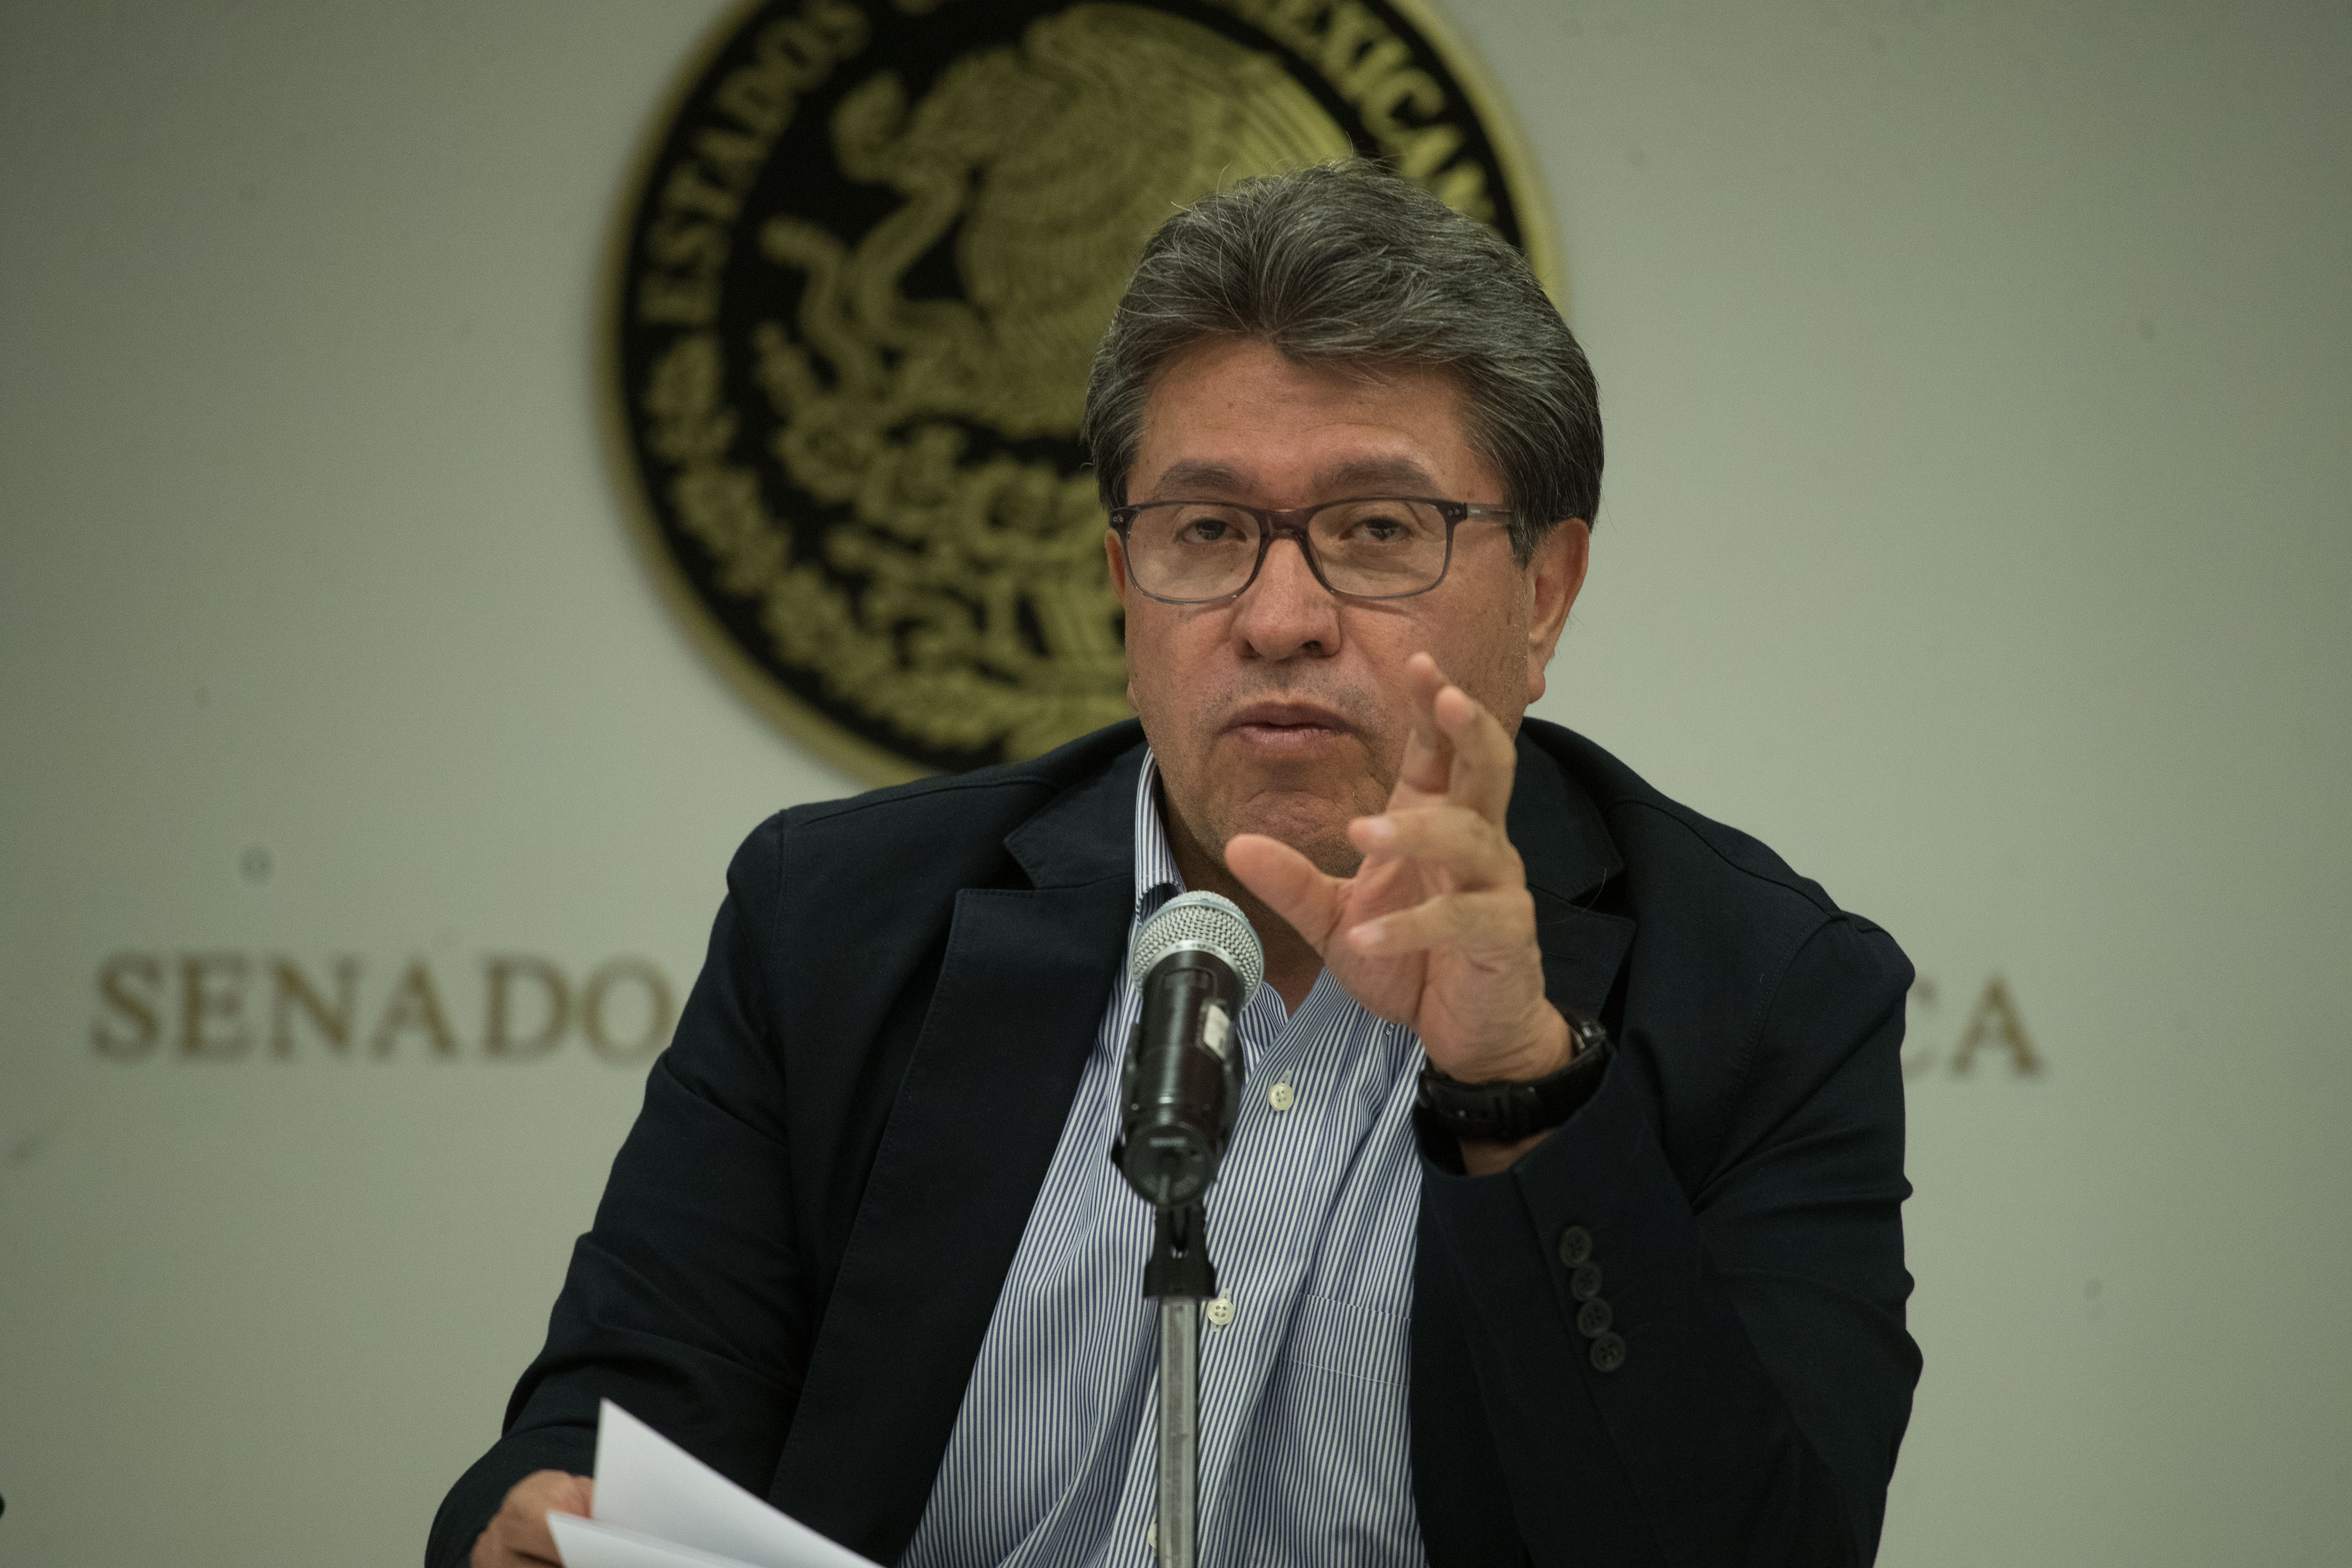 Senado no actuará solo en caso Baja California: Ricardo Monreal